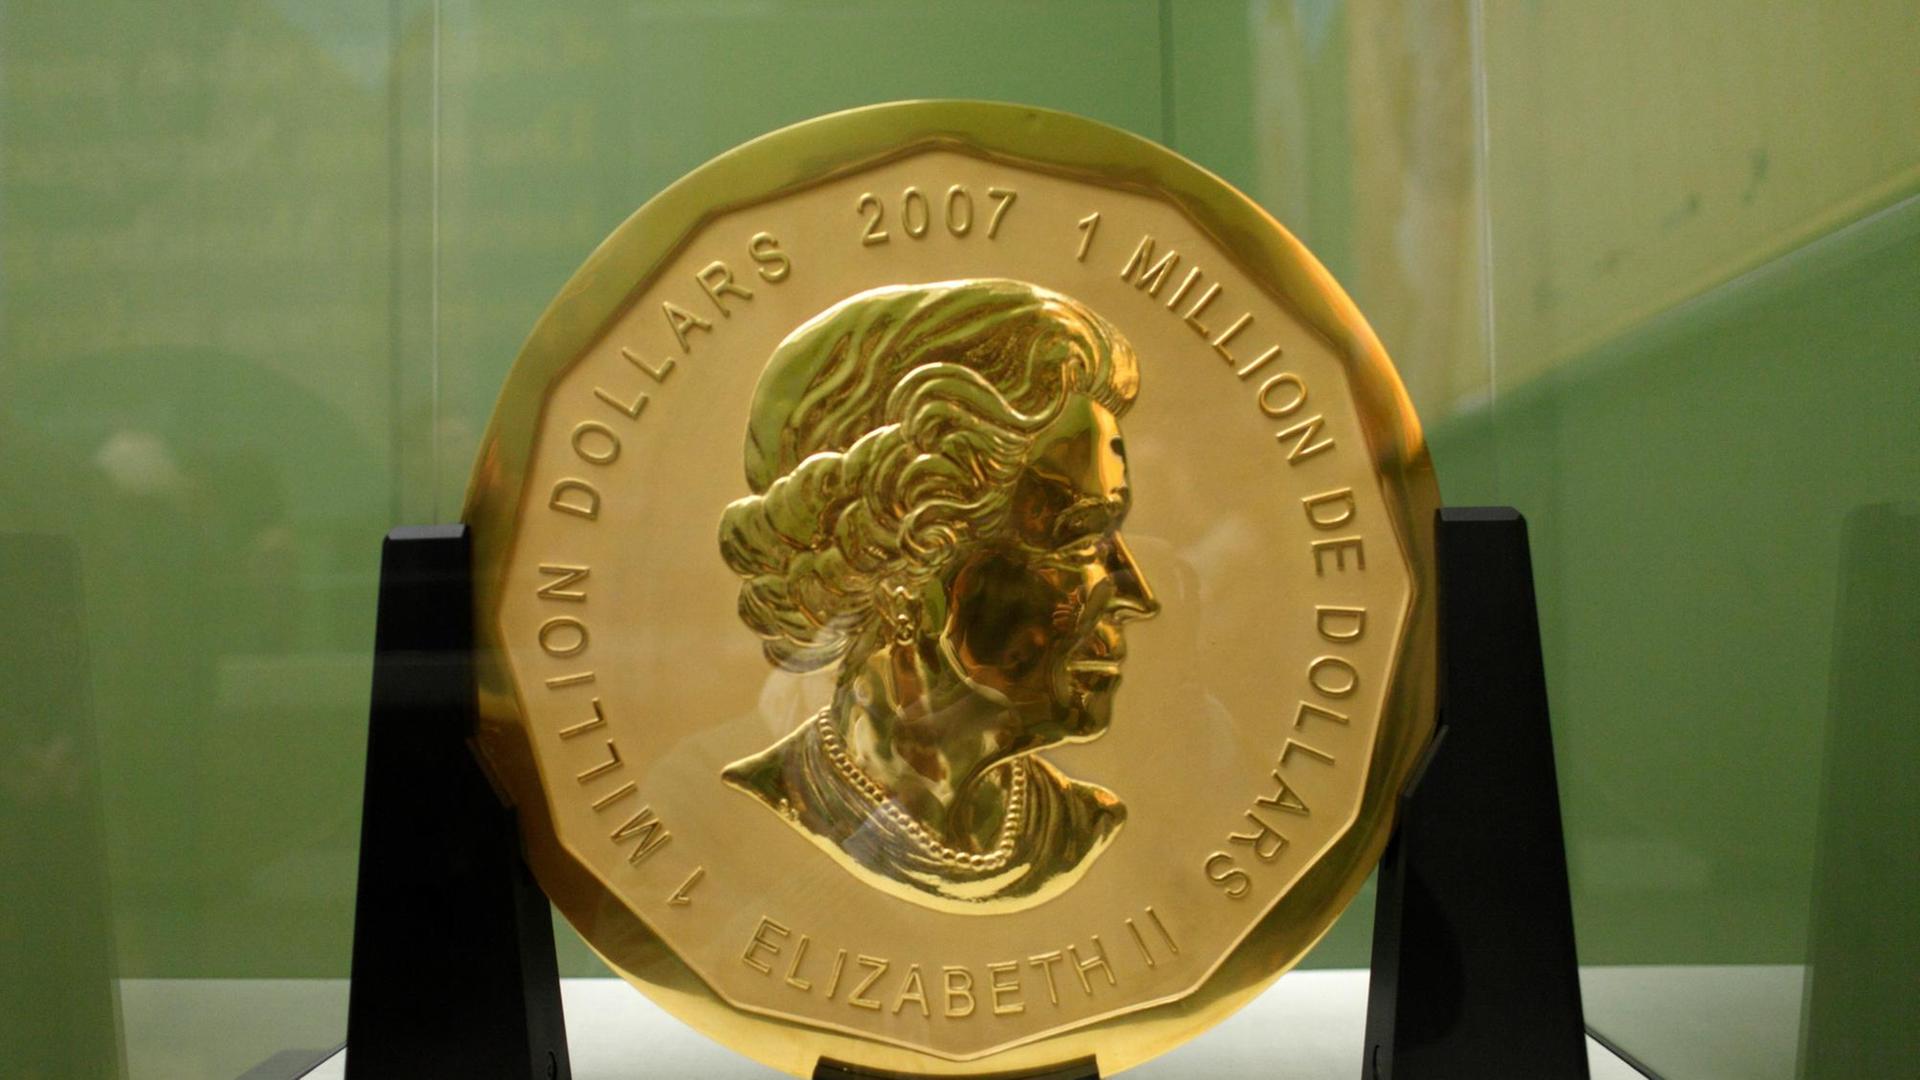 Die große goldene Münze mit dem Bild von Königin Elizabeth II. in einer Vitrine im Museum.